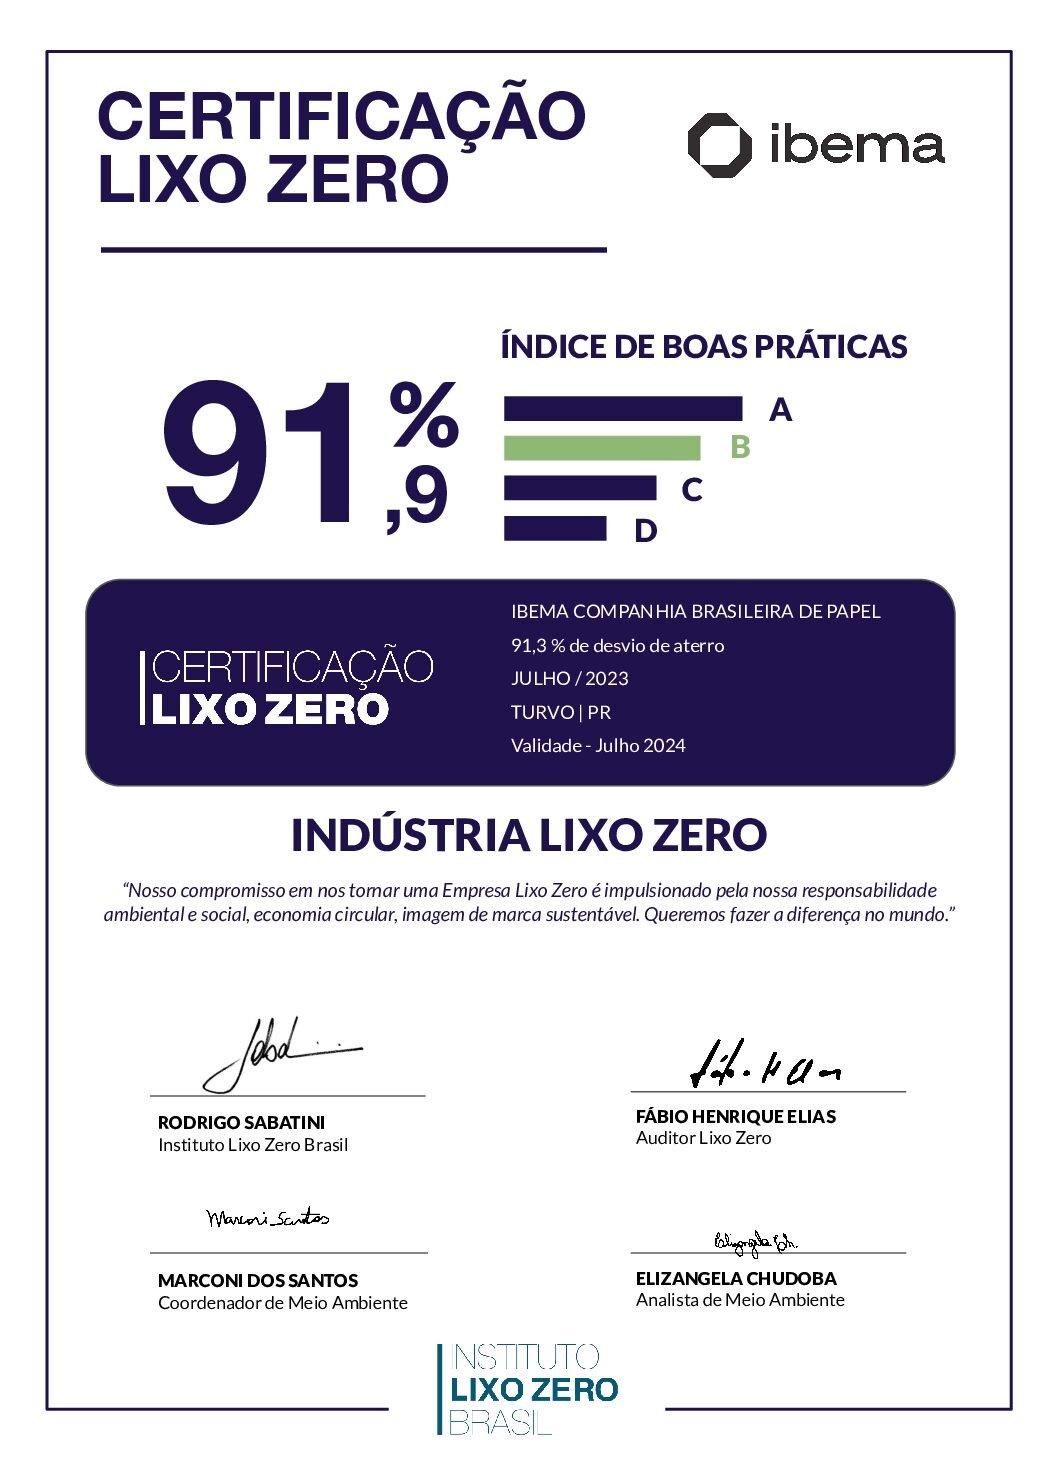 CertificaçãoLixoZero_Ibema_Turvo_PR_Julho_2023 (1)